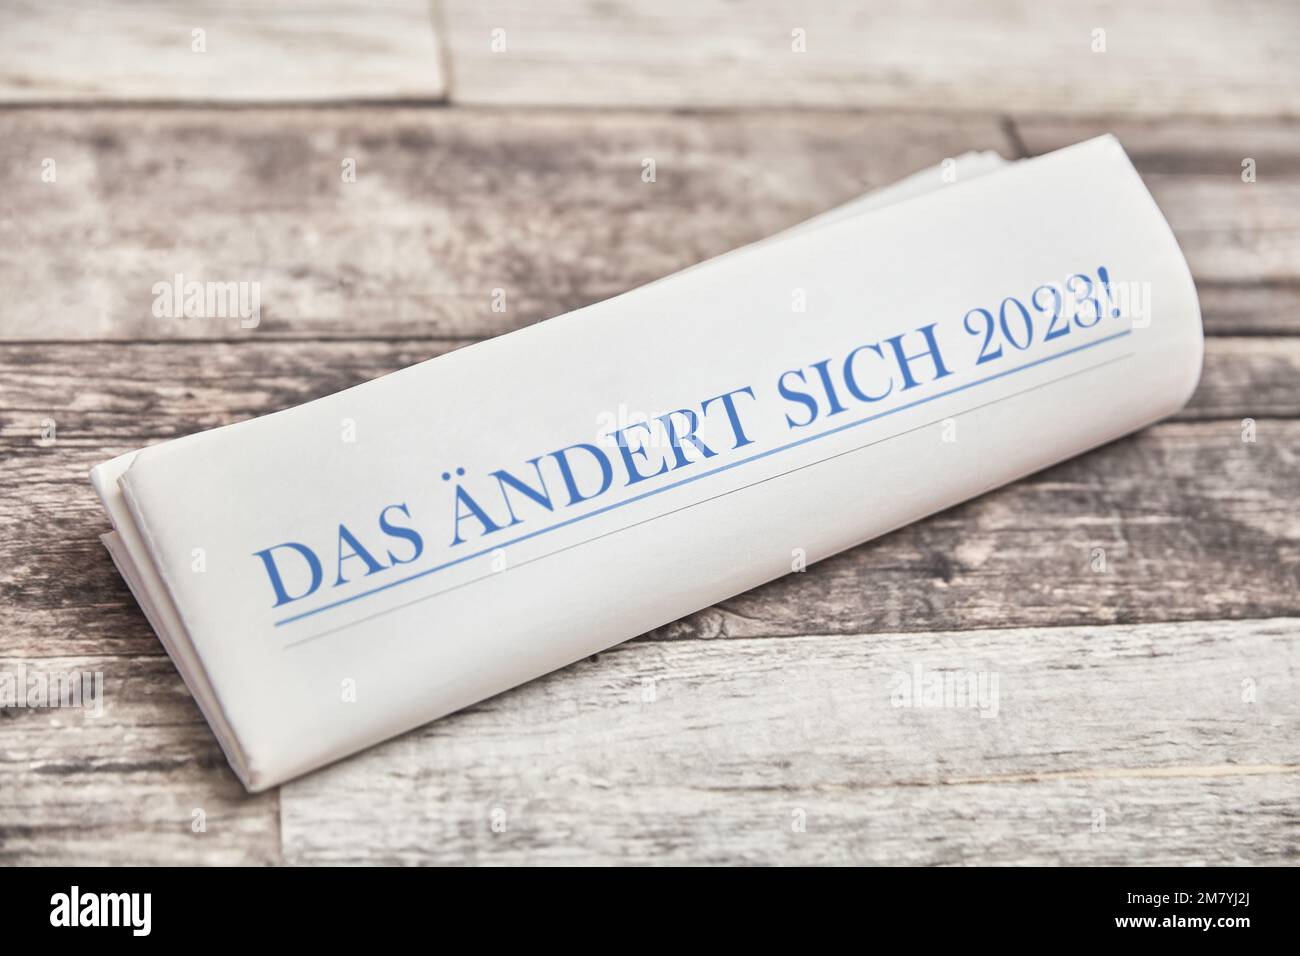 DAS ändert sich 2023! (Allemand pour: Qui changera en 2023) est écrit sur la première page d'un journal plié sur une table en bois Banque D'Images